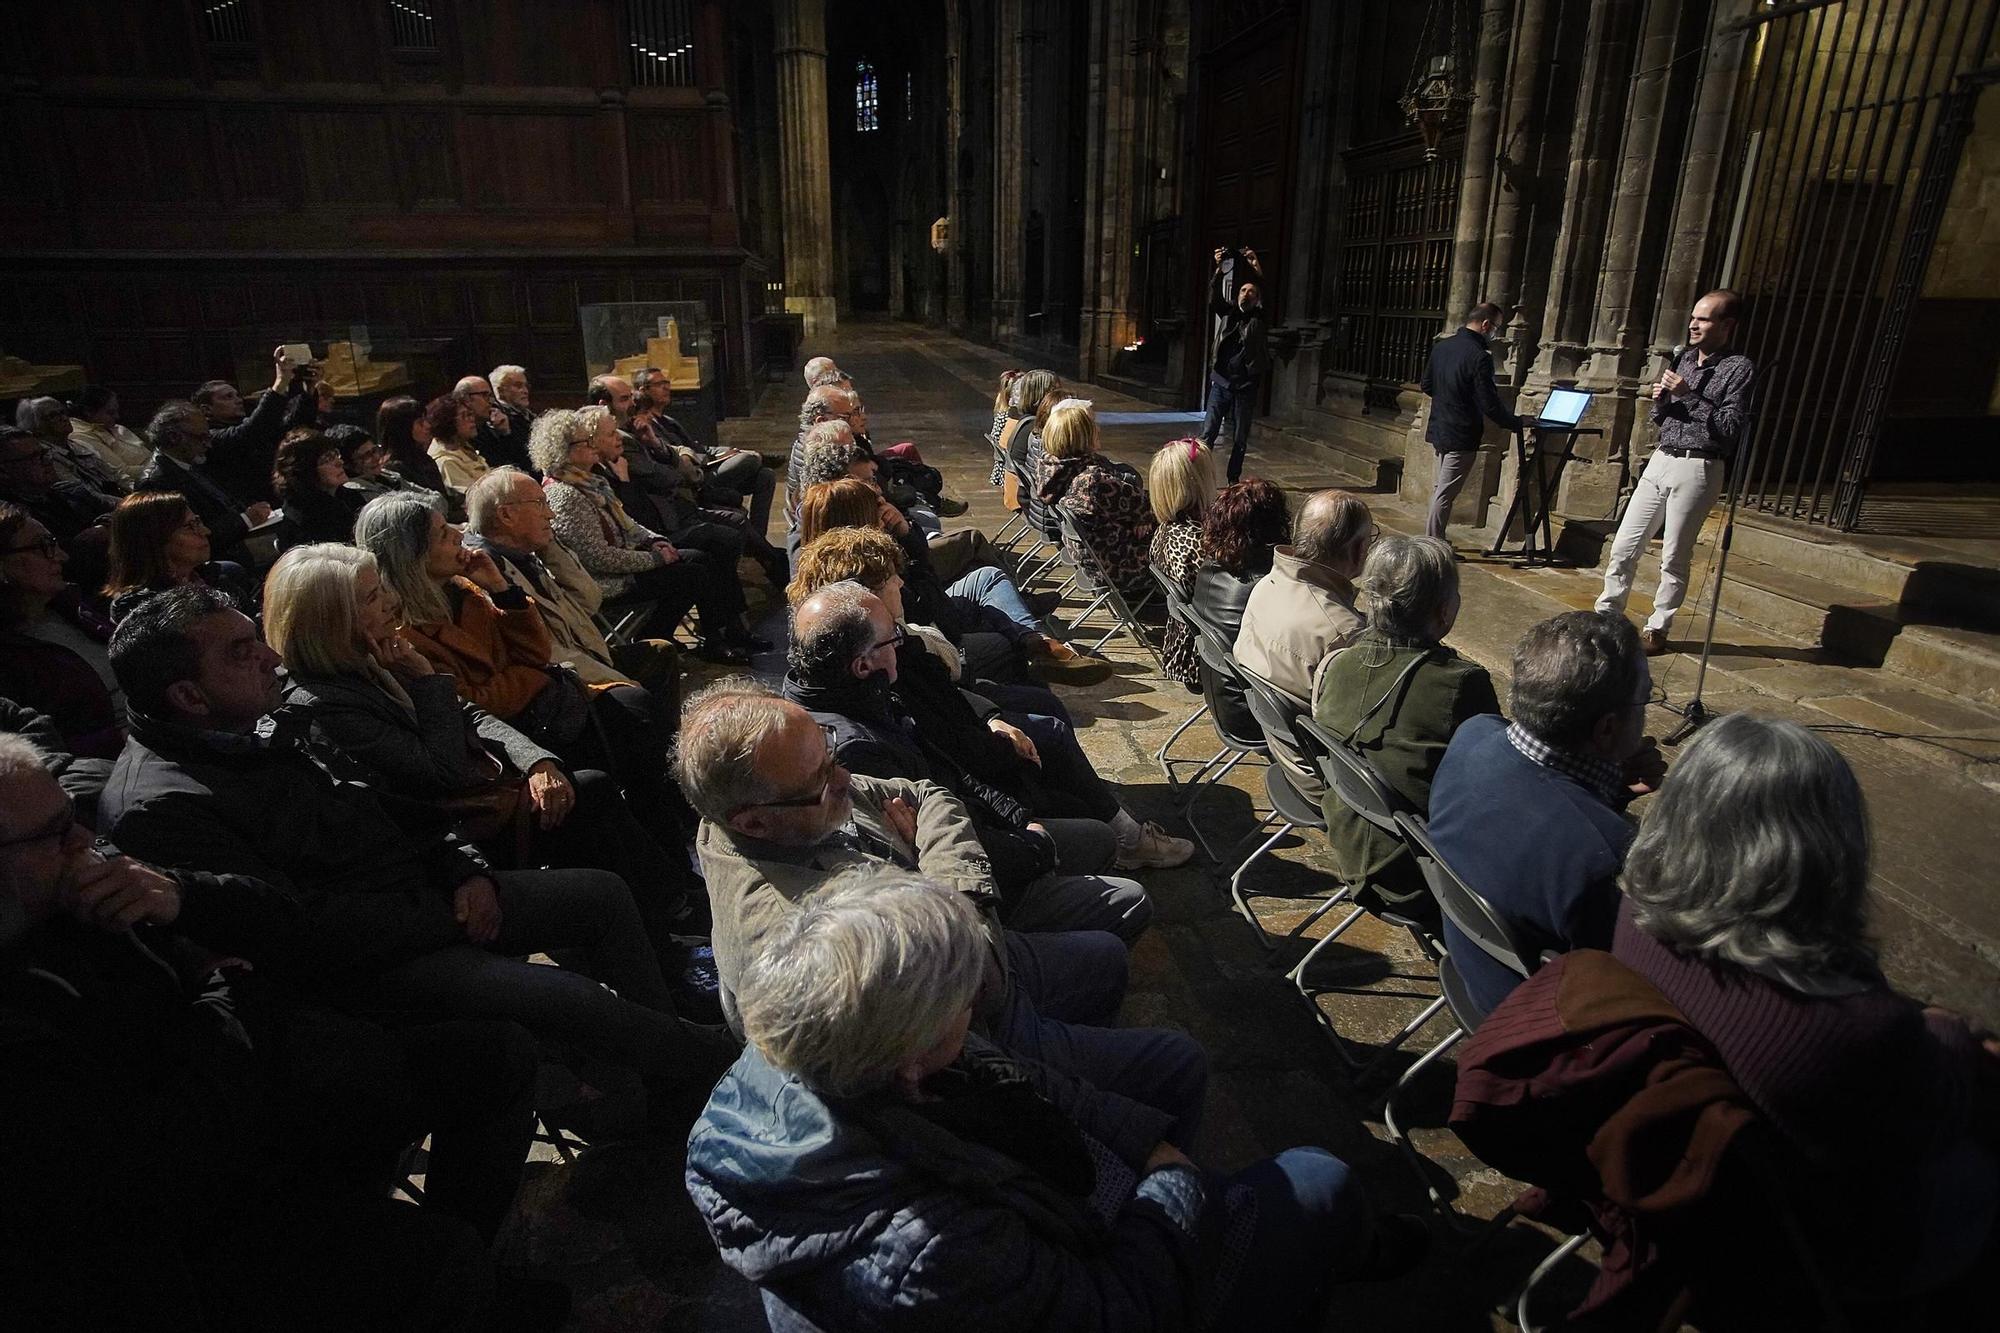 L’hipnòtic do sostingut de la campana Beneta de la Catedral de Girona